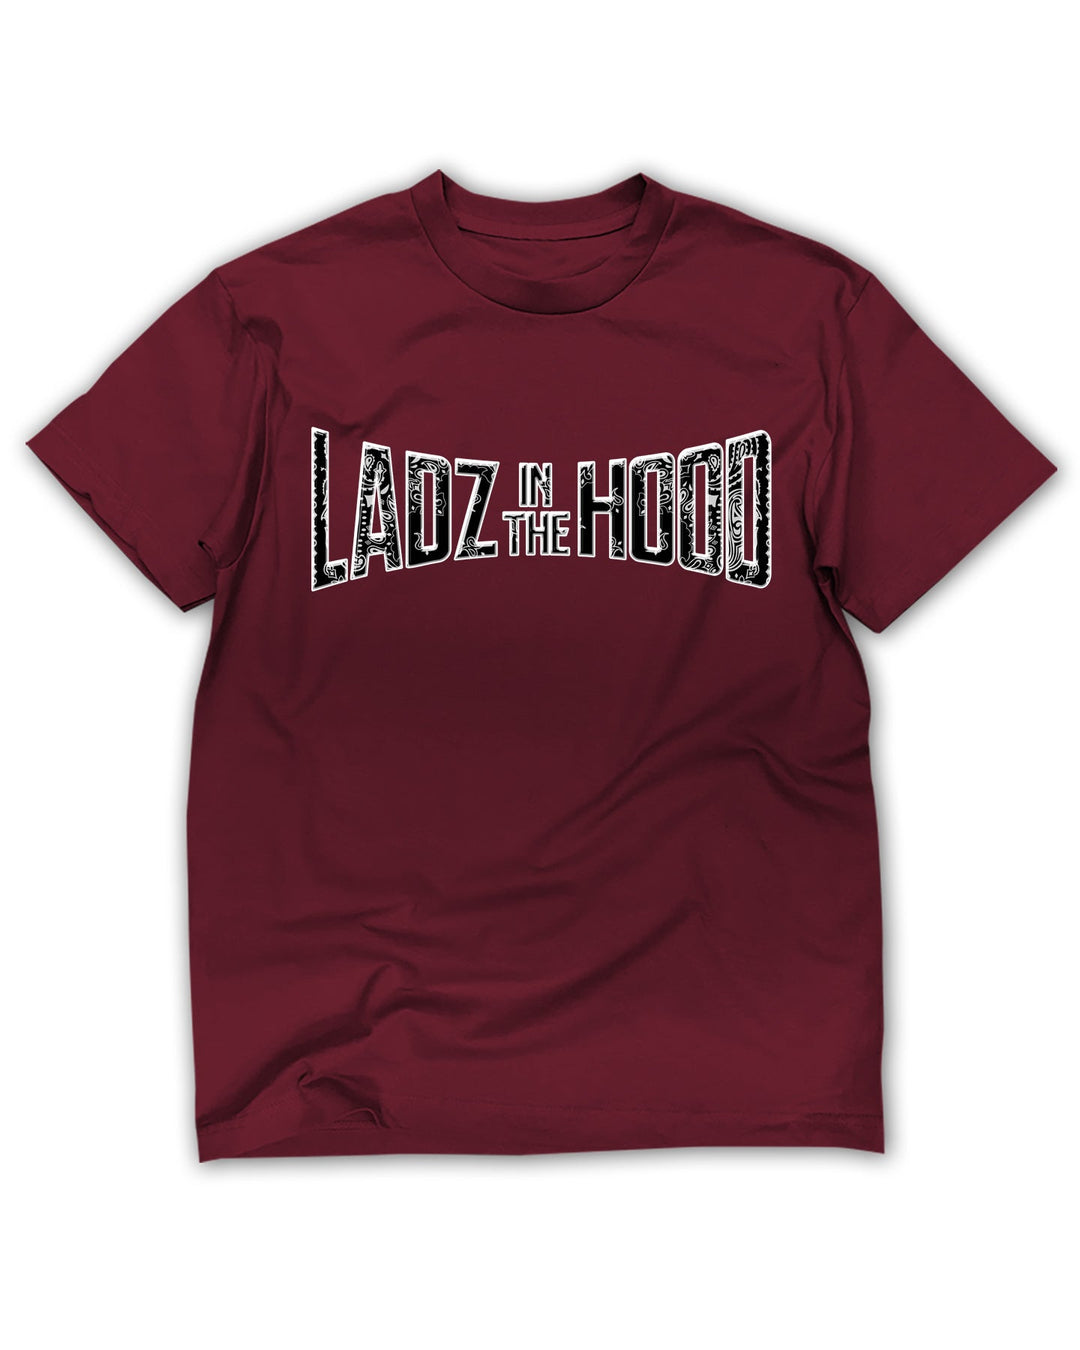 Ladz in the Hood Tee - Maroon